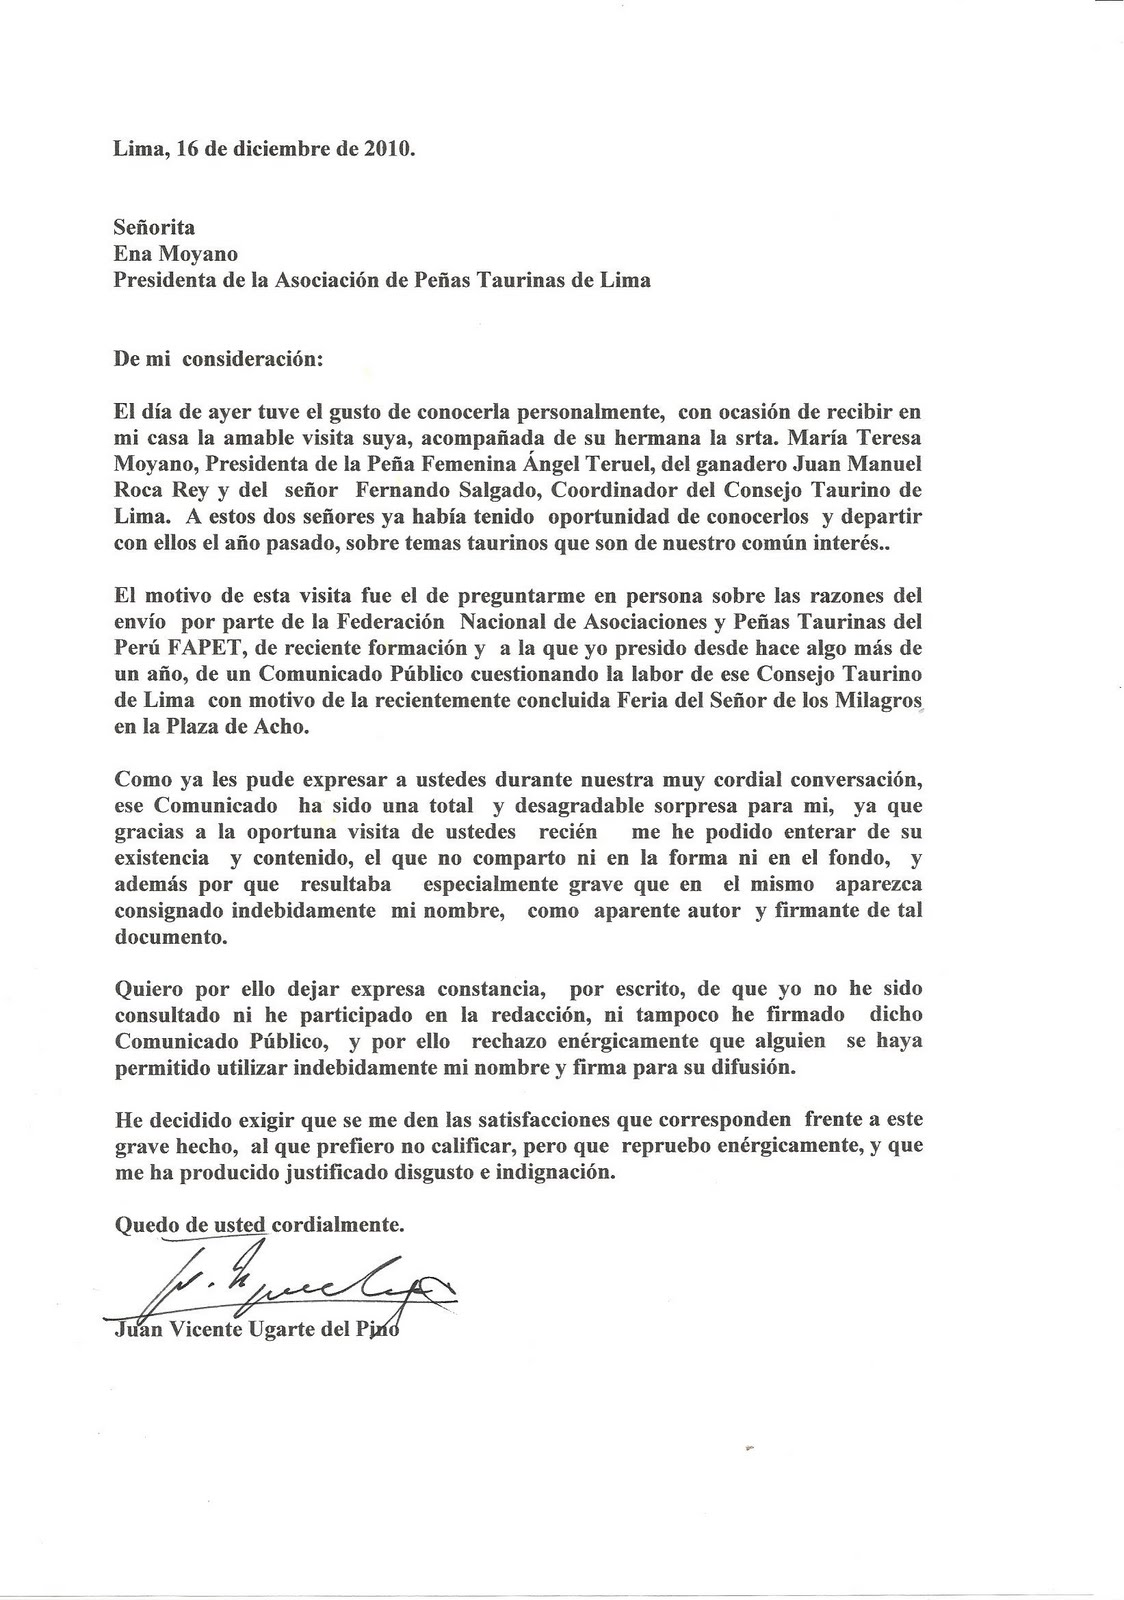 Perú Taurino: CARTA DEL DR. UGARTE DEL PINO DESCONOCIENDO 